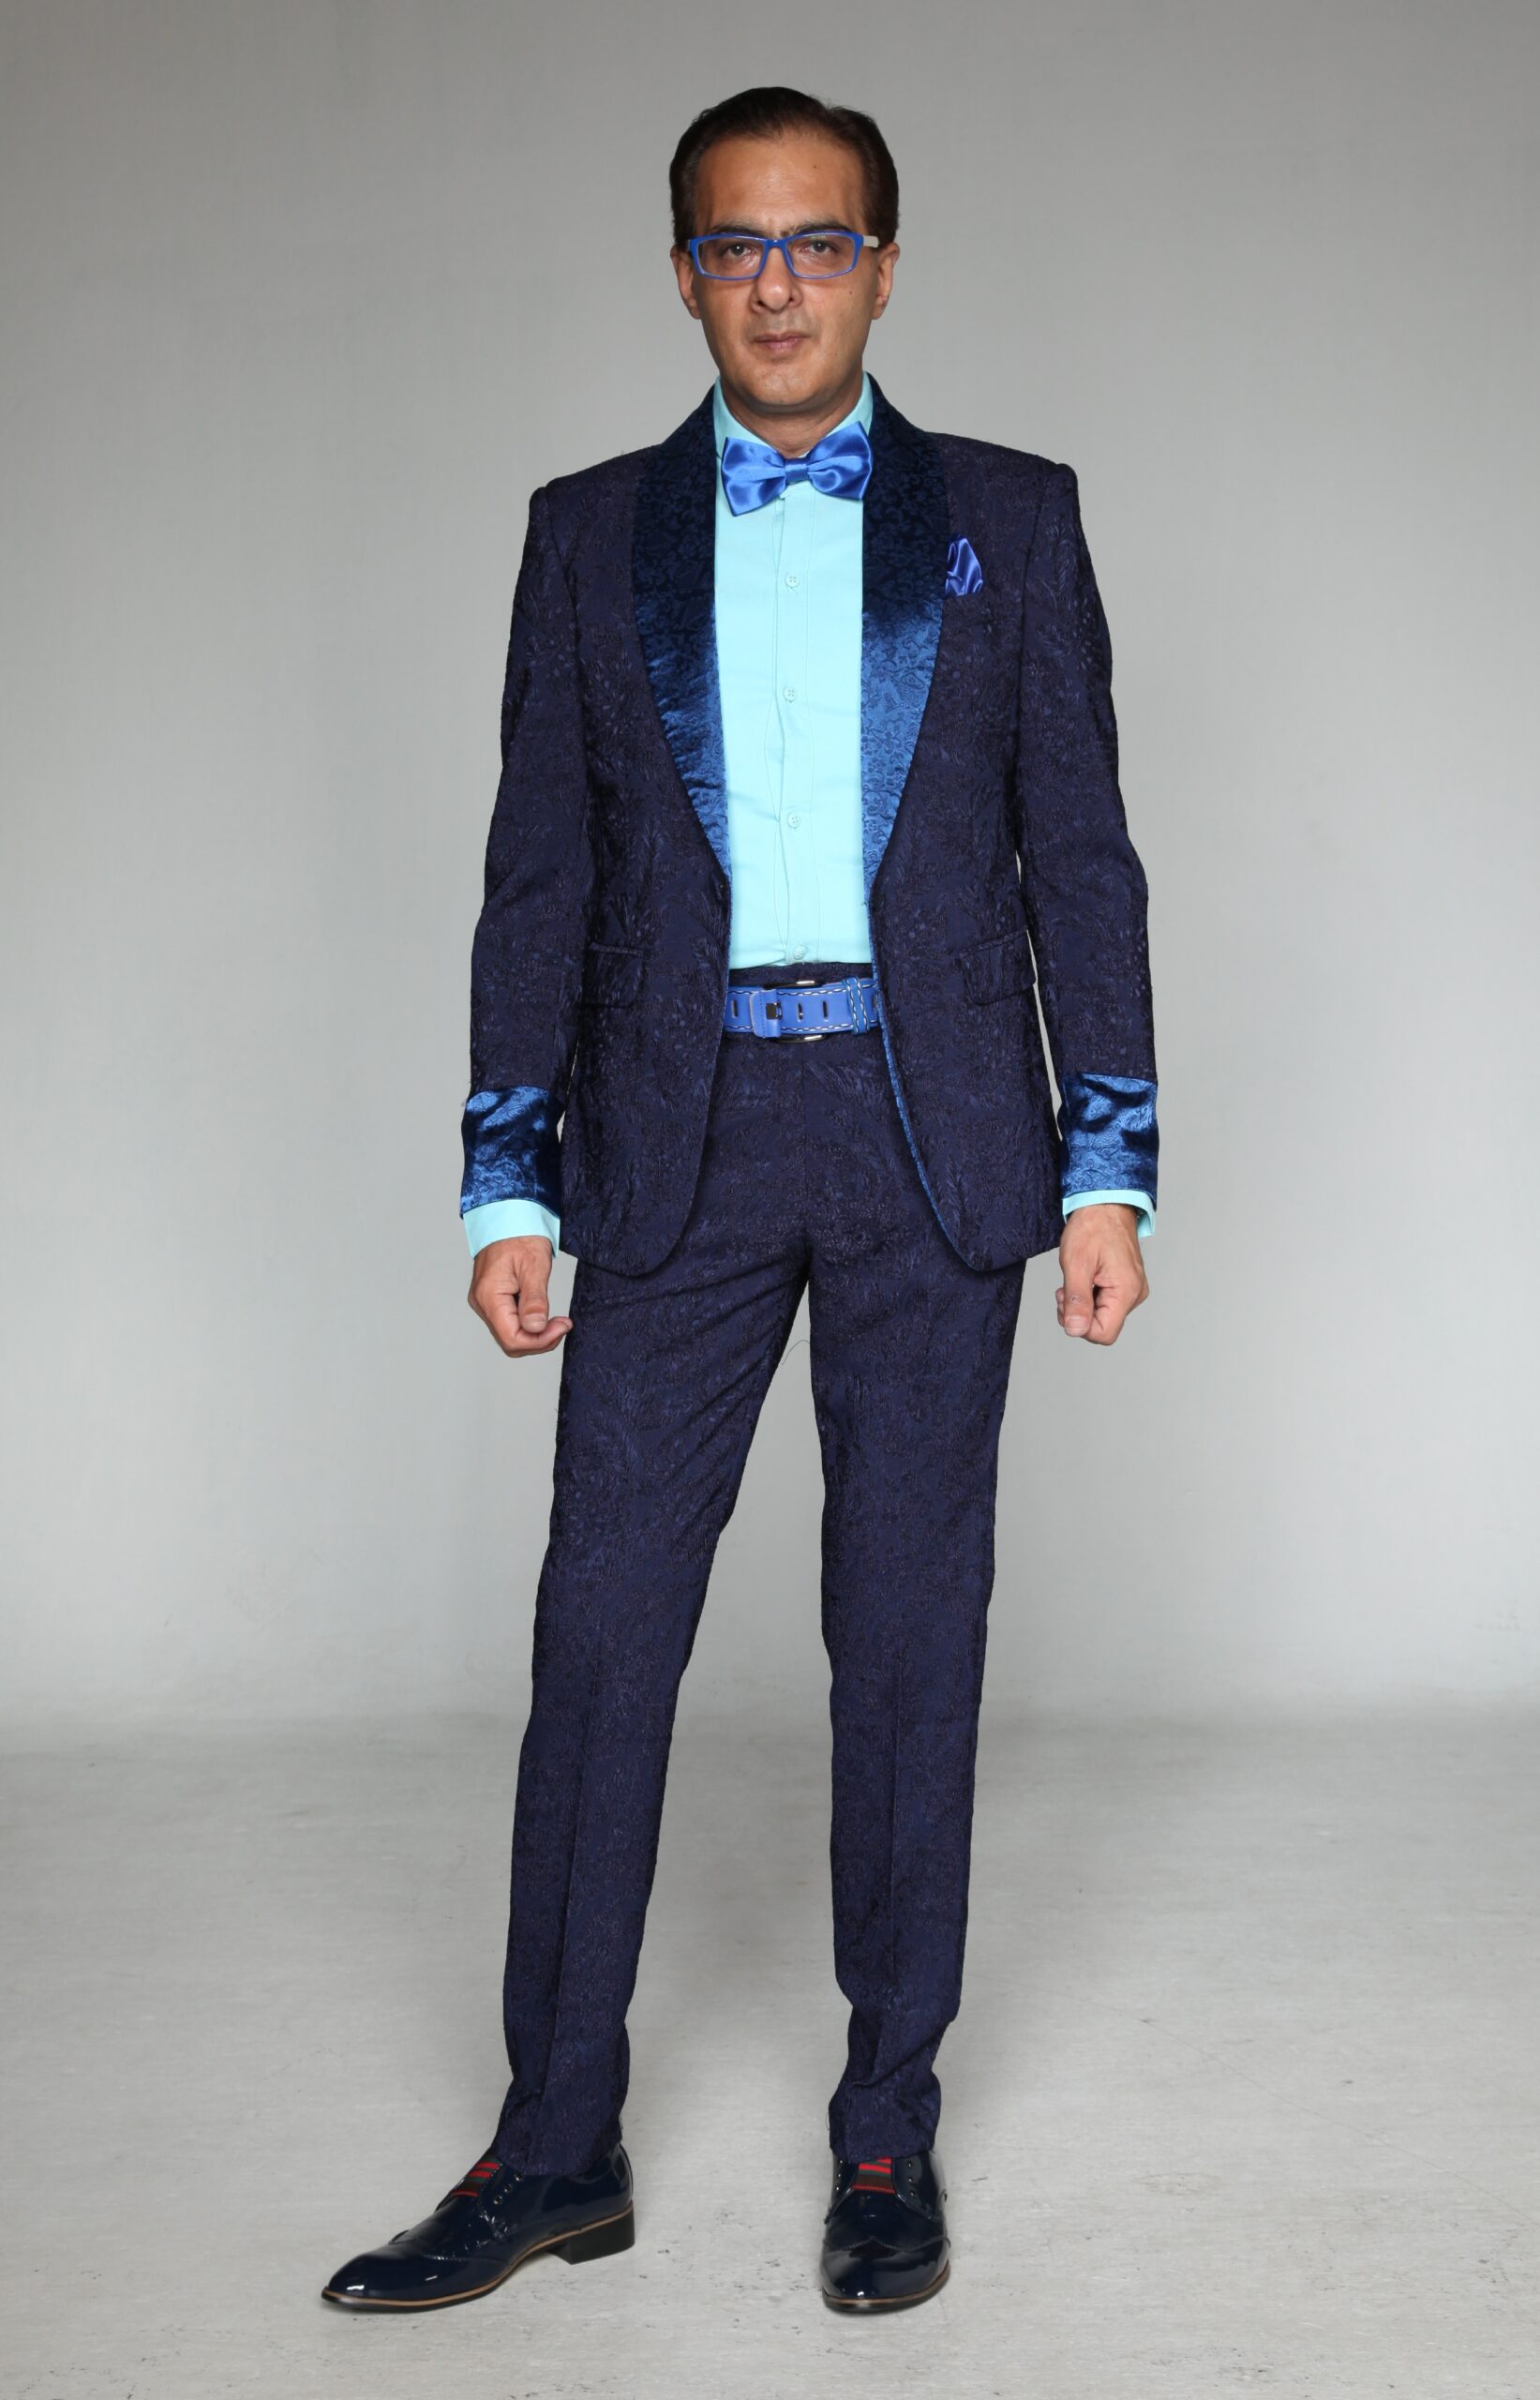 Mst 5023 02 Rent Rental Hire Tuxedo Suit Black Tie Suit Designer Suits Shop Tailor Tailors Singapore Wedding